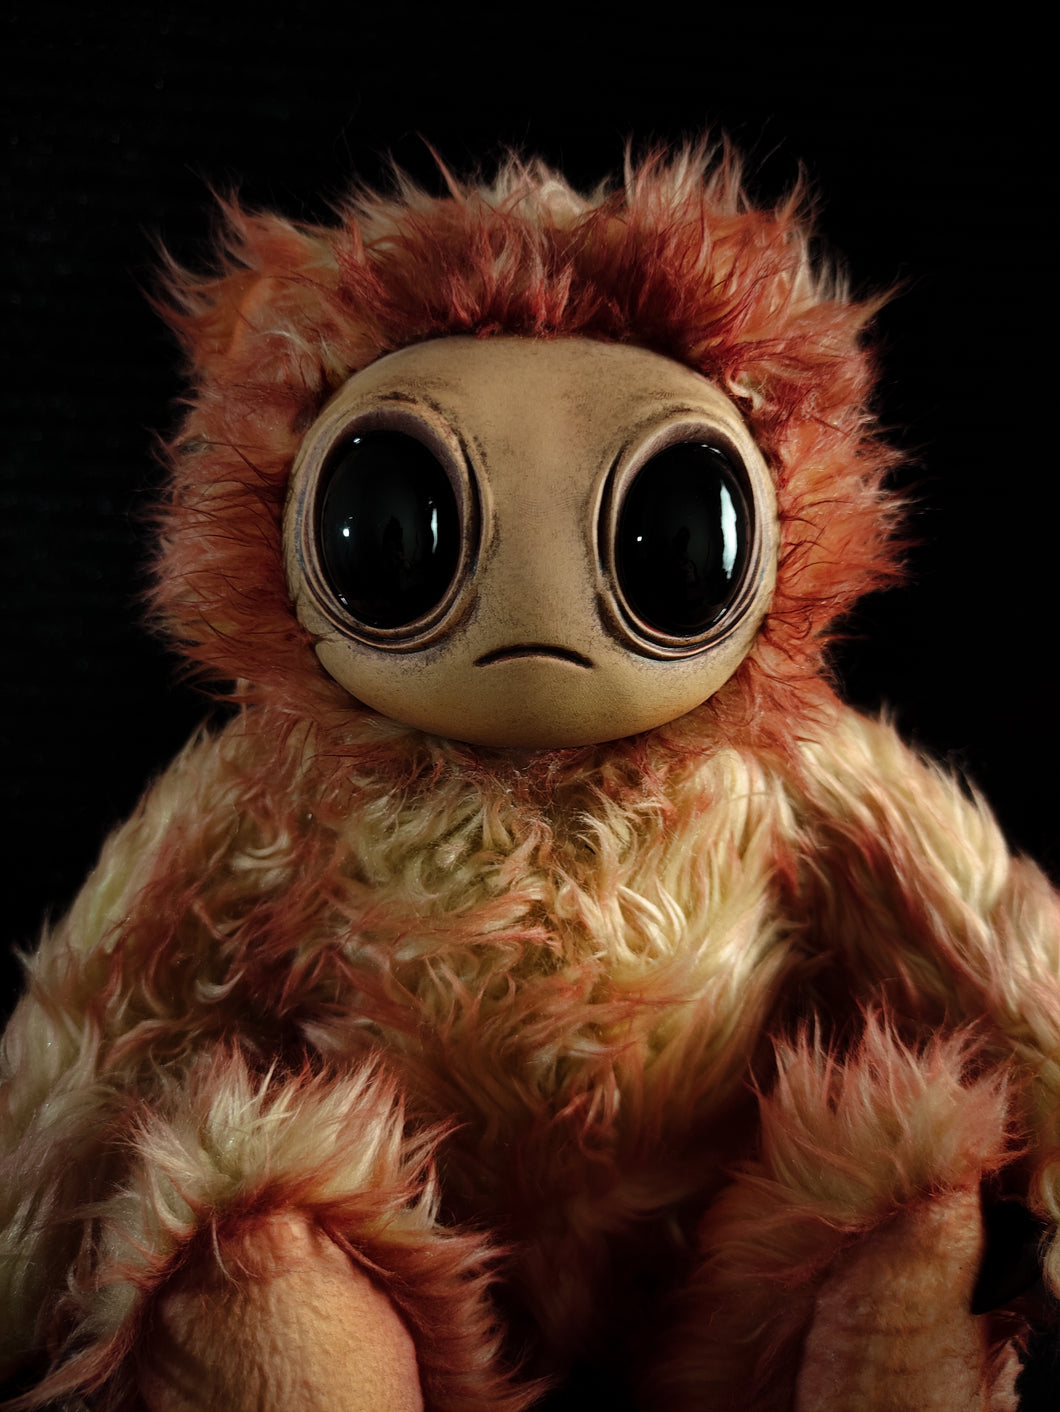 Meeporo (Blazing Blip Ver.) - Monster Art Doll Plush Toy